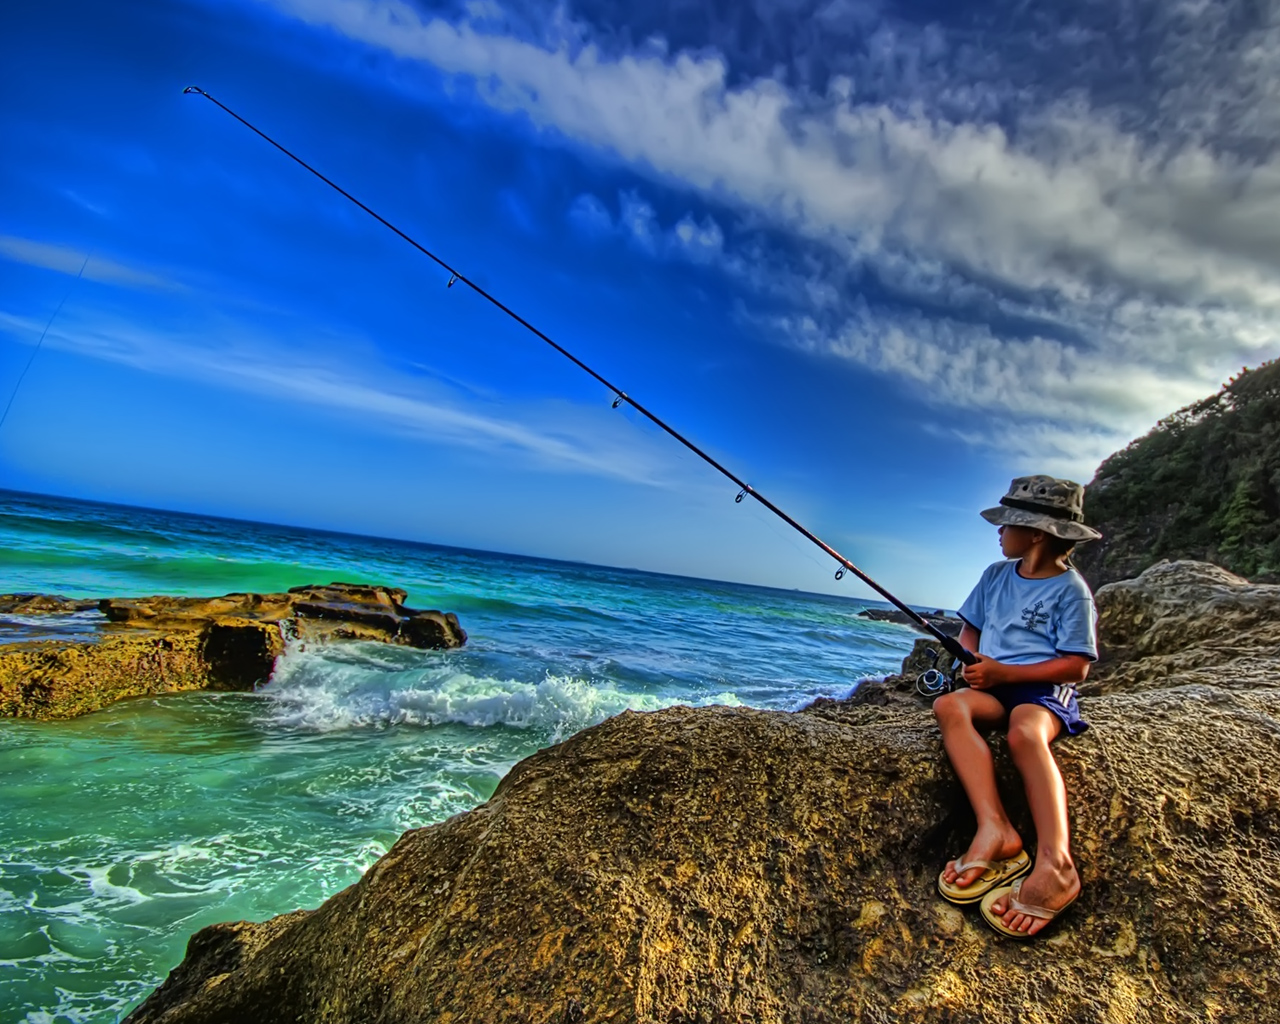 fond d'écran de pêche,pêche au rocher,canne à pêche,loisirs de plein air,pêche à la ligne,pêche